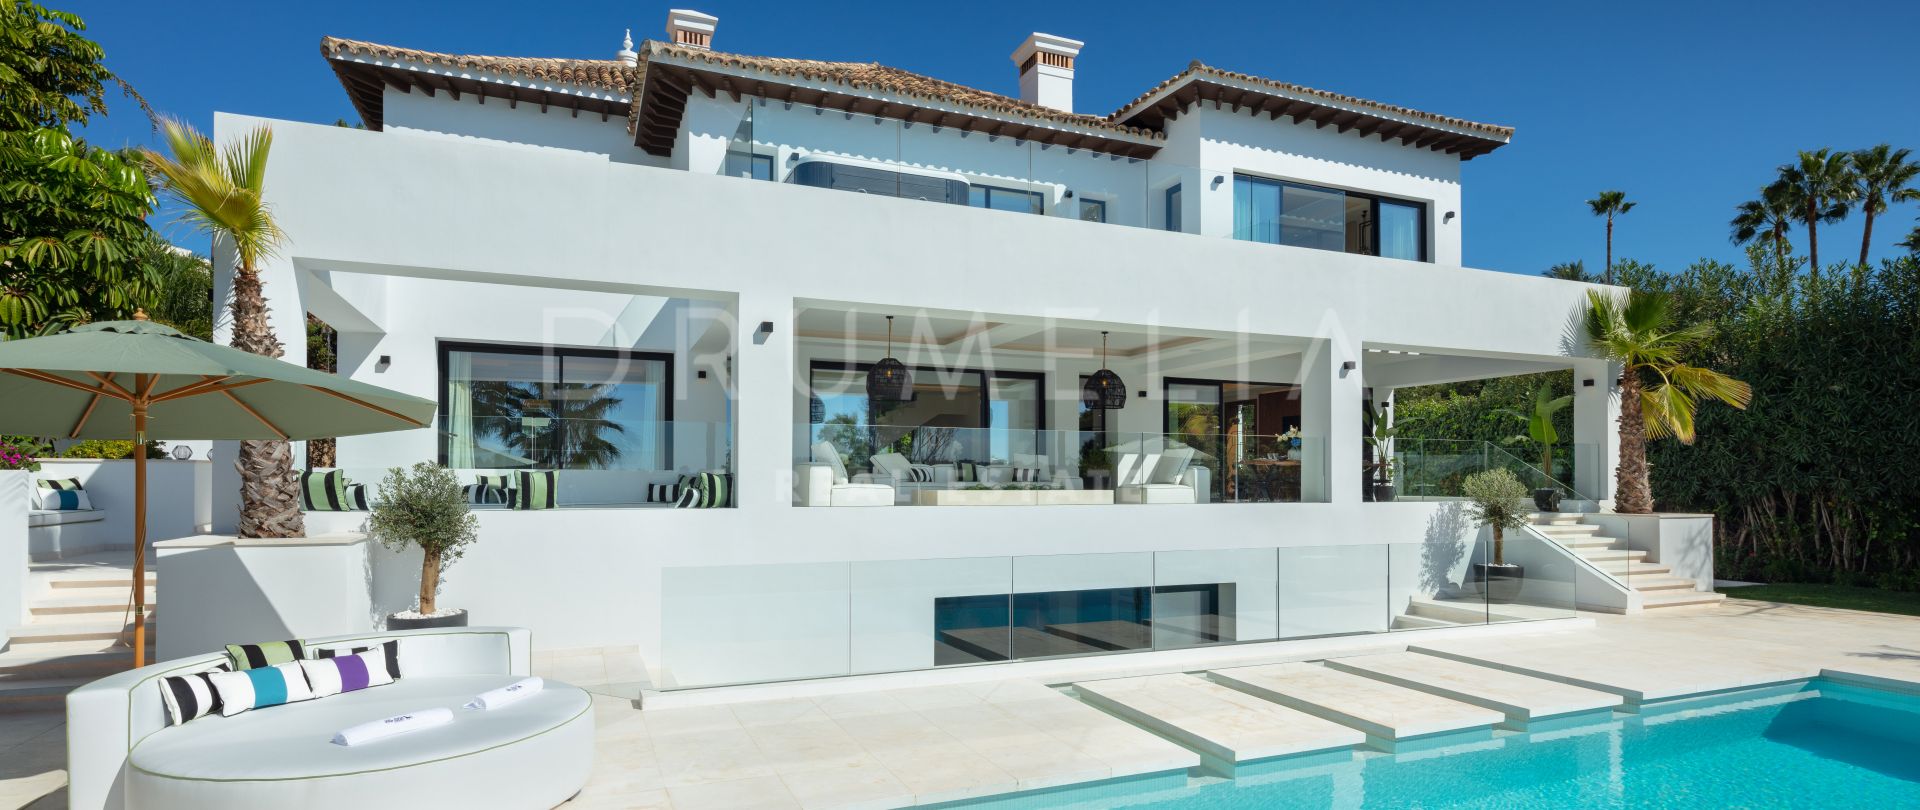 Villa 1000 - Villa de luxe moderne et sophistiquée en bord de golf avec une ambiance internationale, Nueva Andalucía